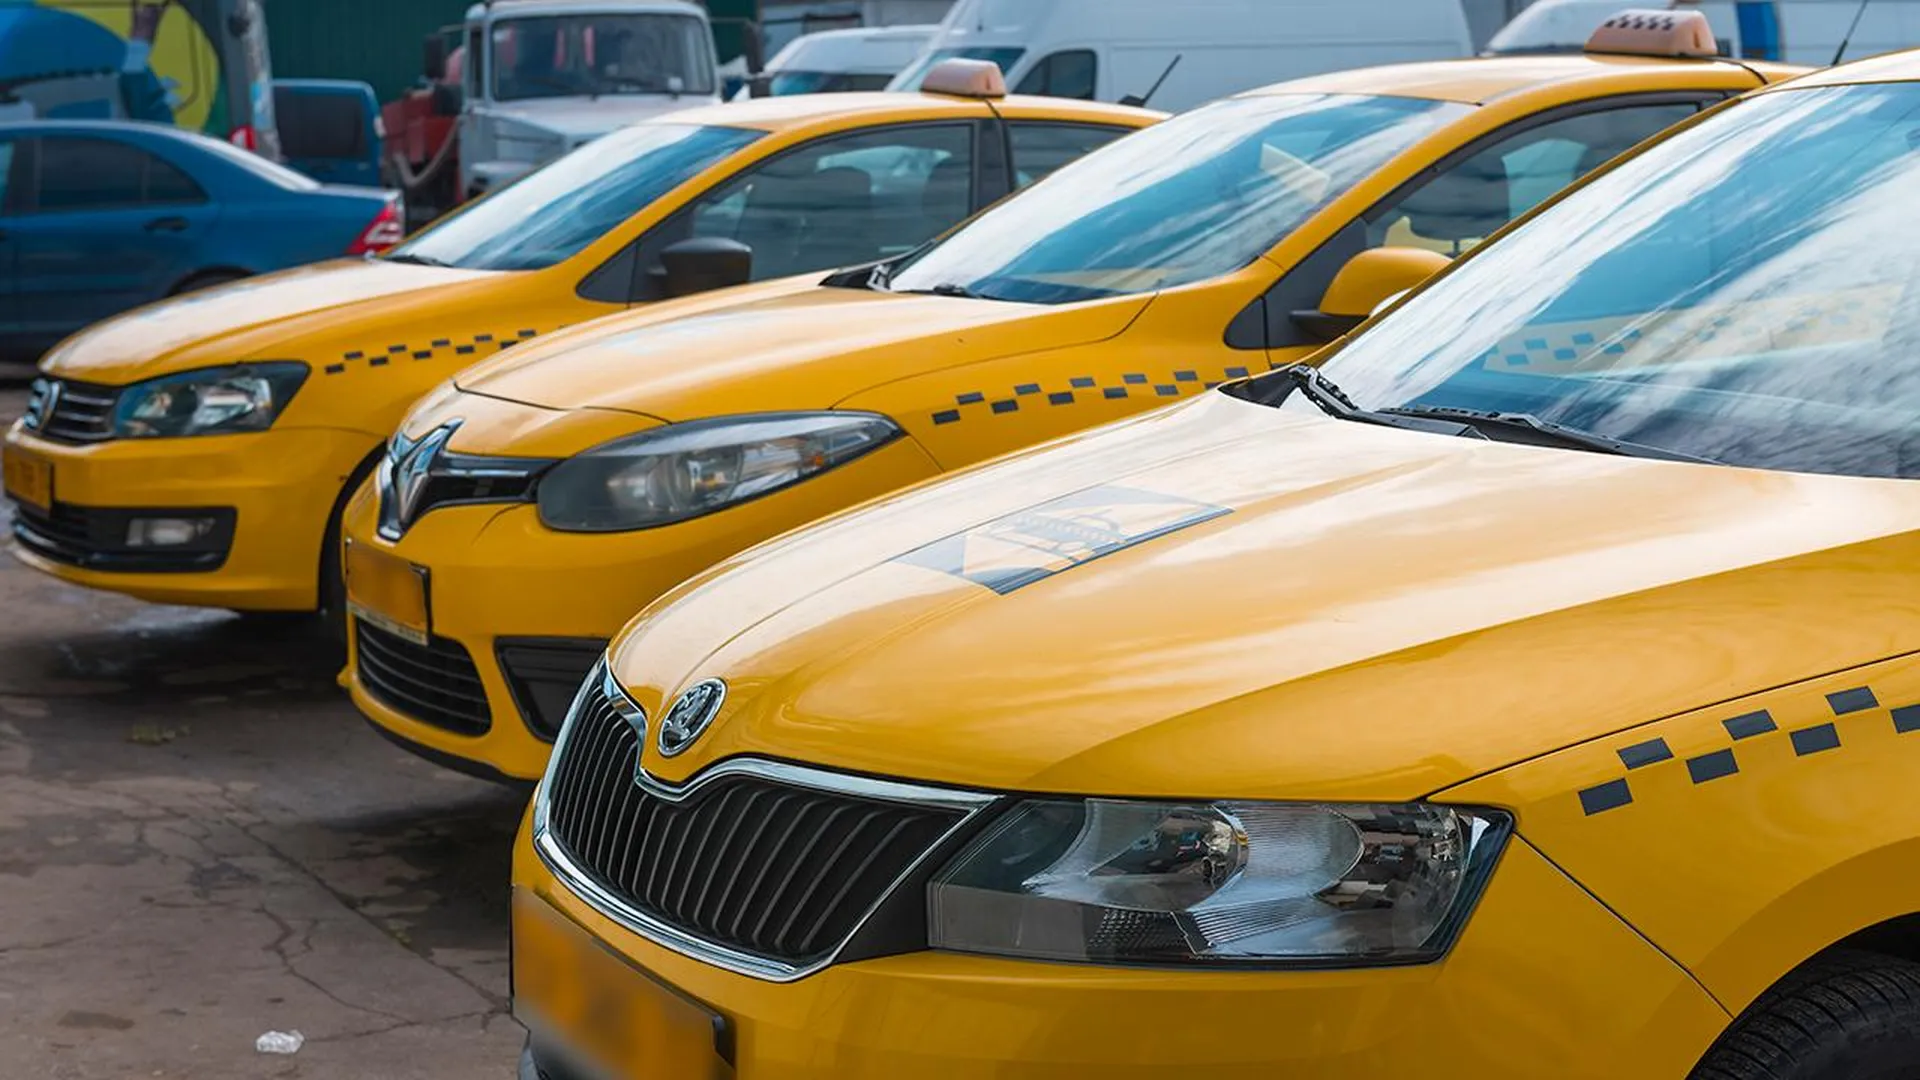 Таксисты под угрозой: IT-эксперт назвал профессии, которые скоро исчезнут из-за нейросетей